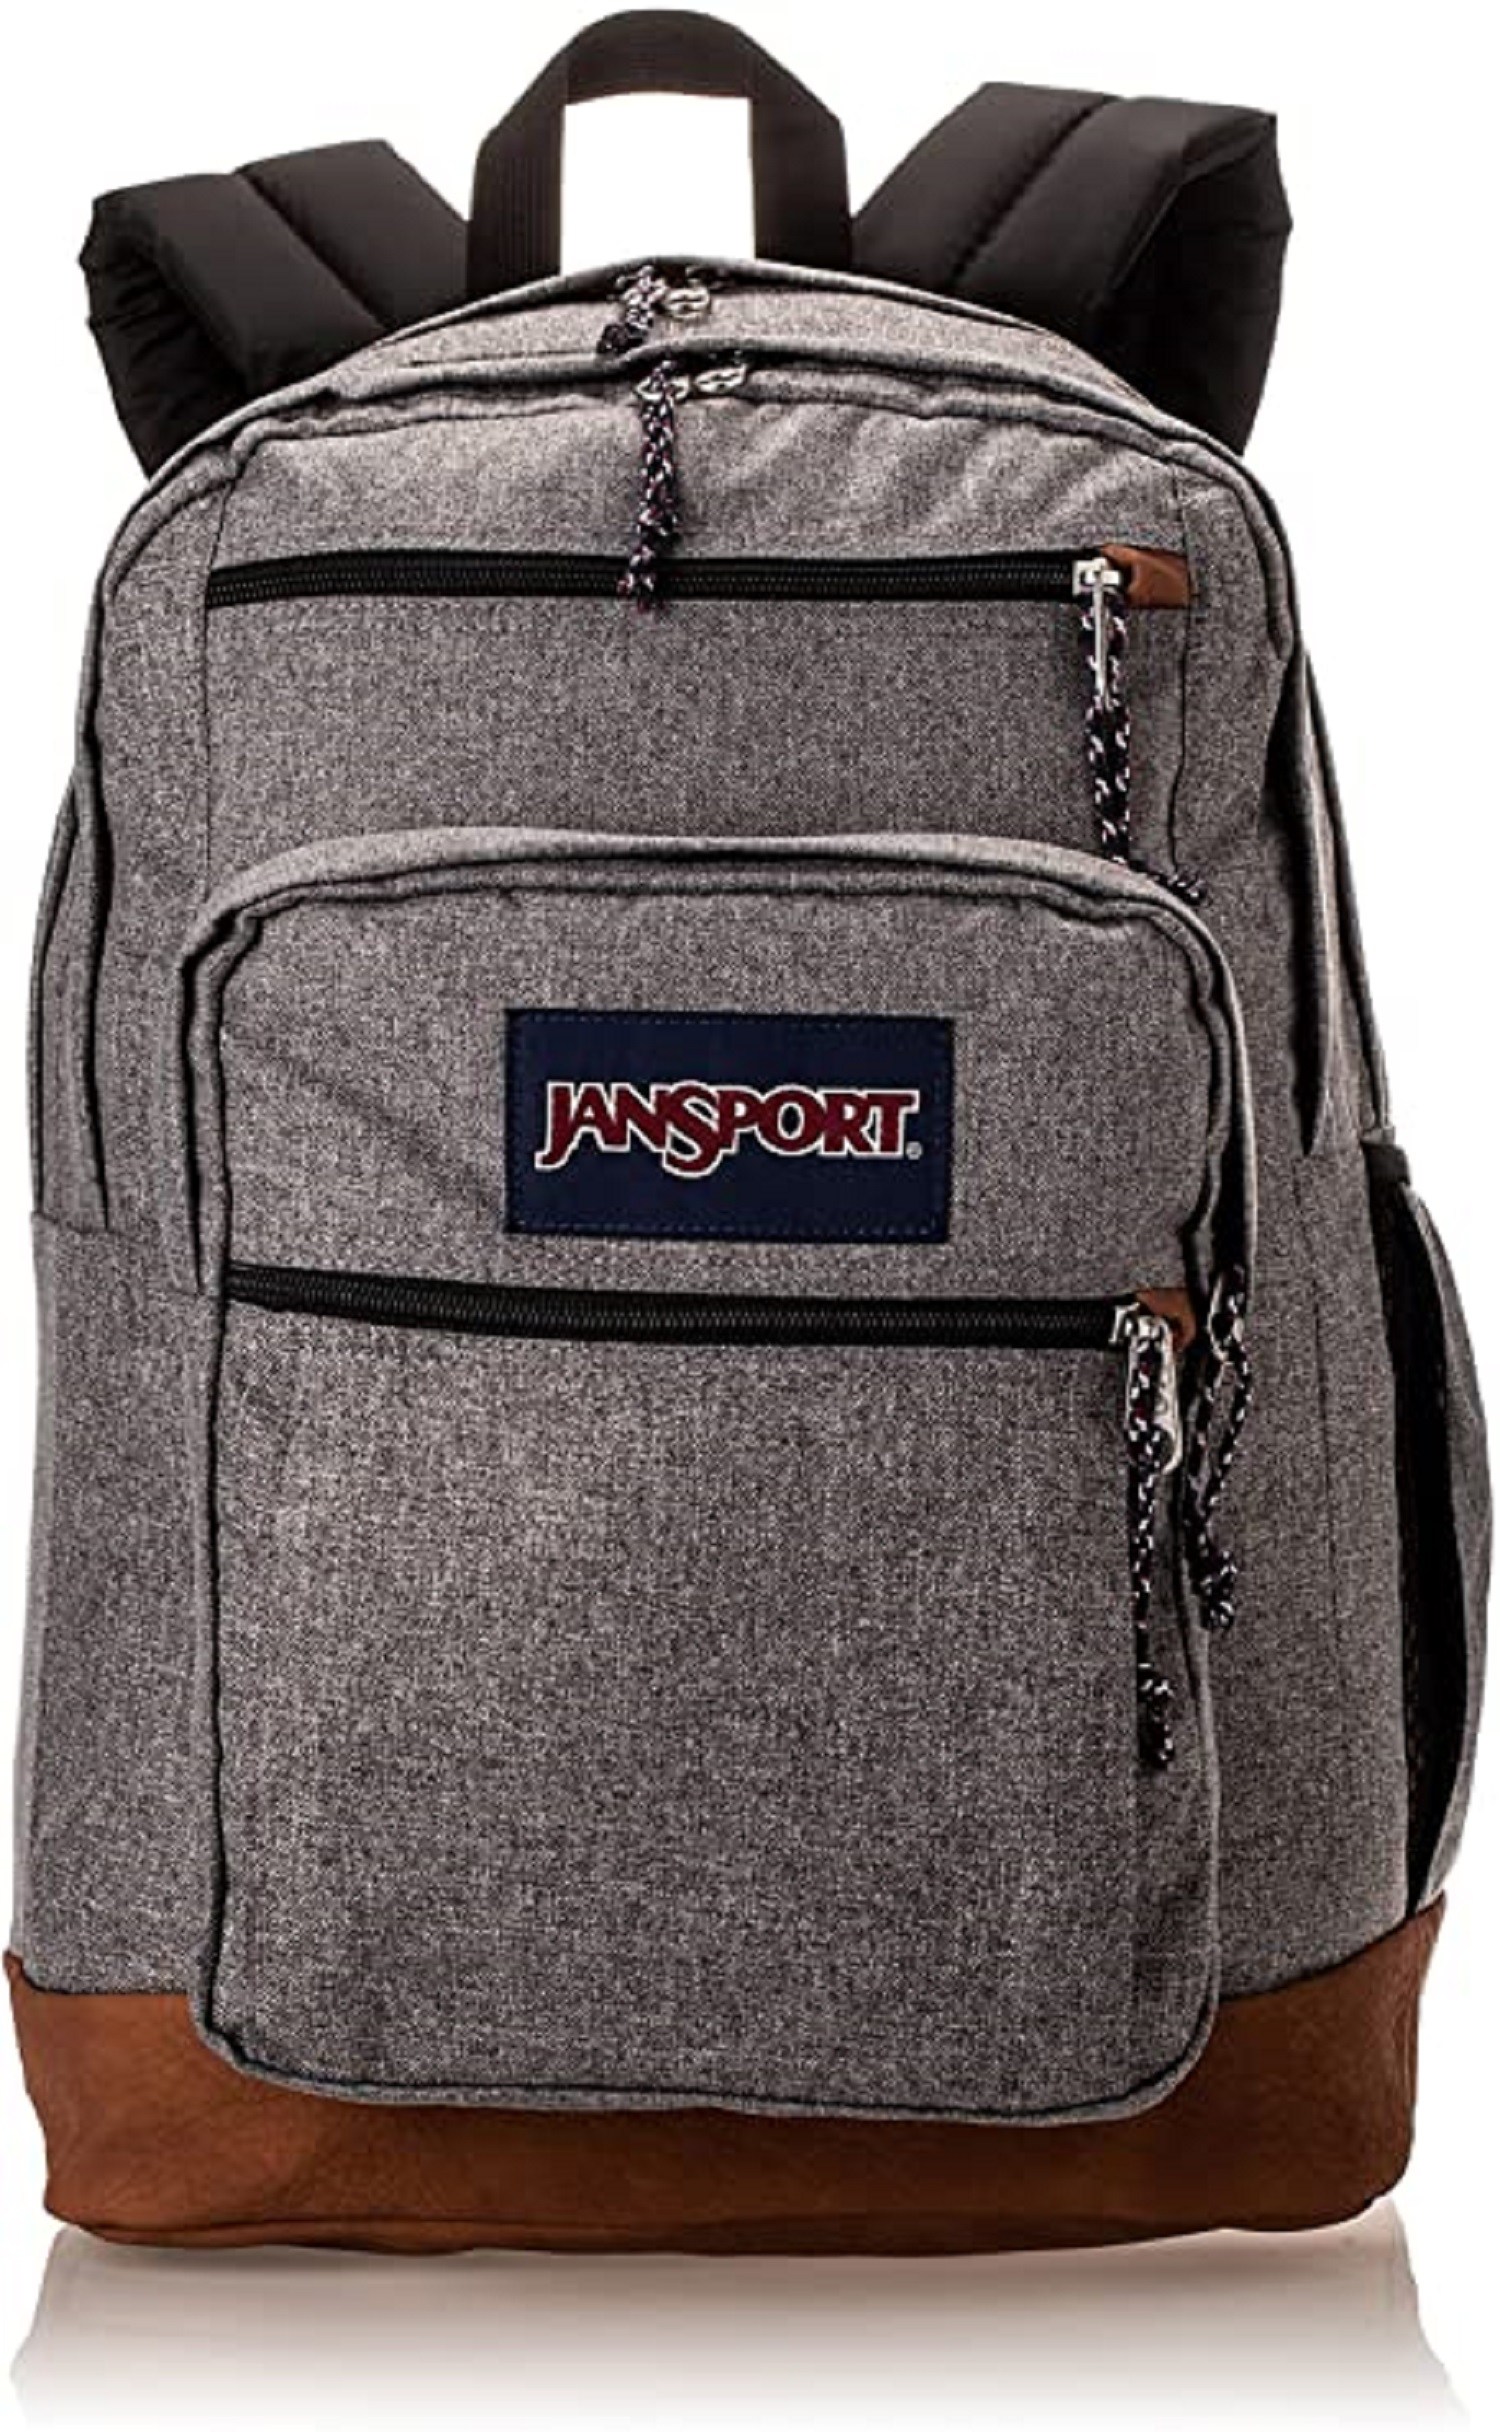 Best Backpacks for College: Jansport, Chrome, Thule, Road Runner